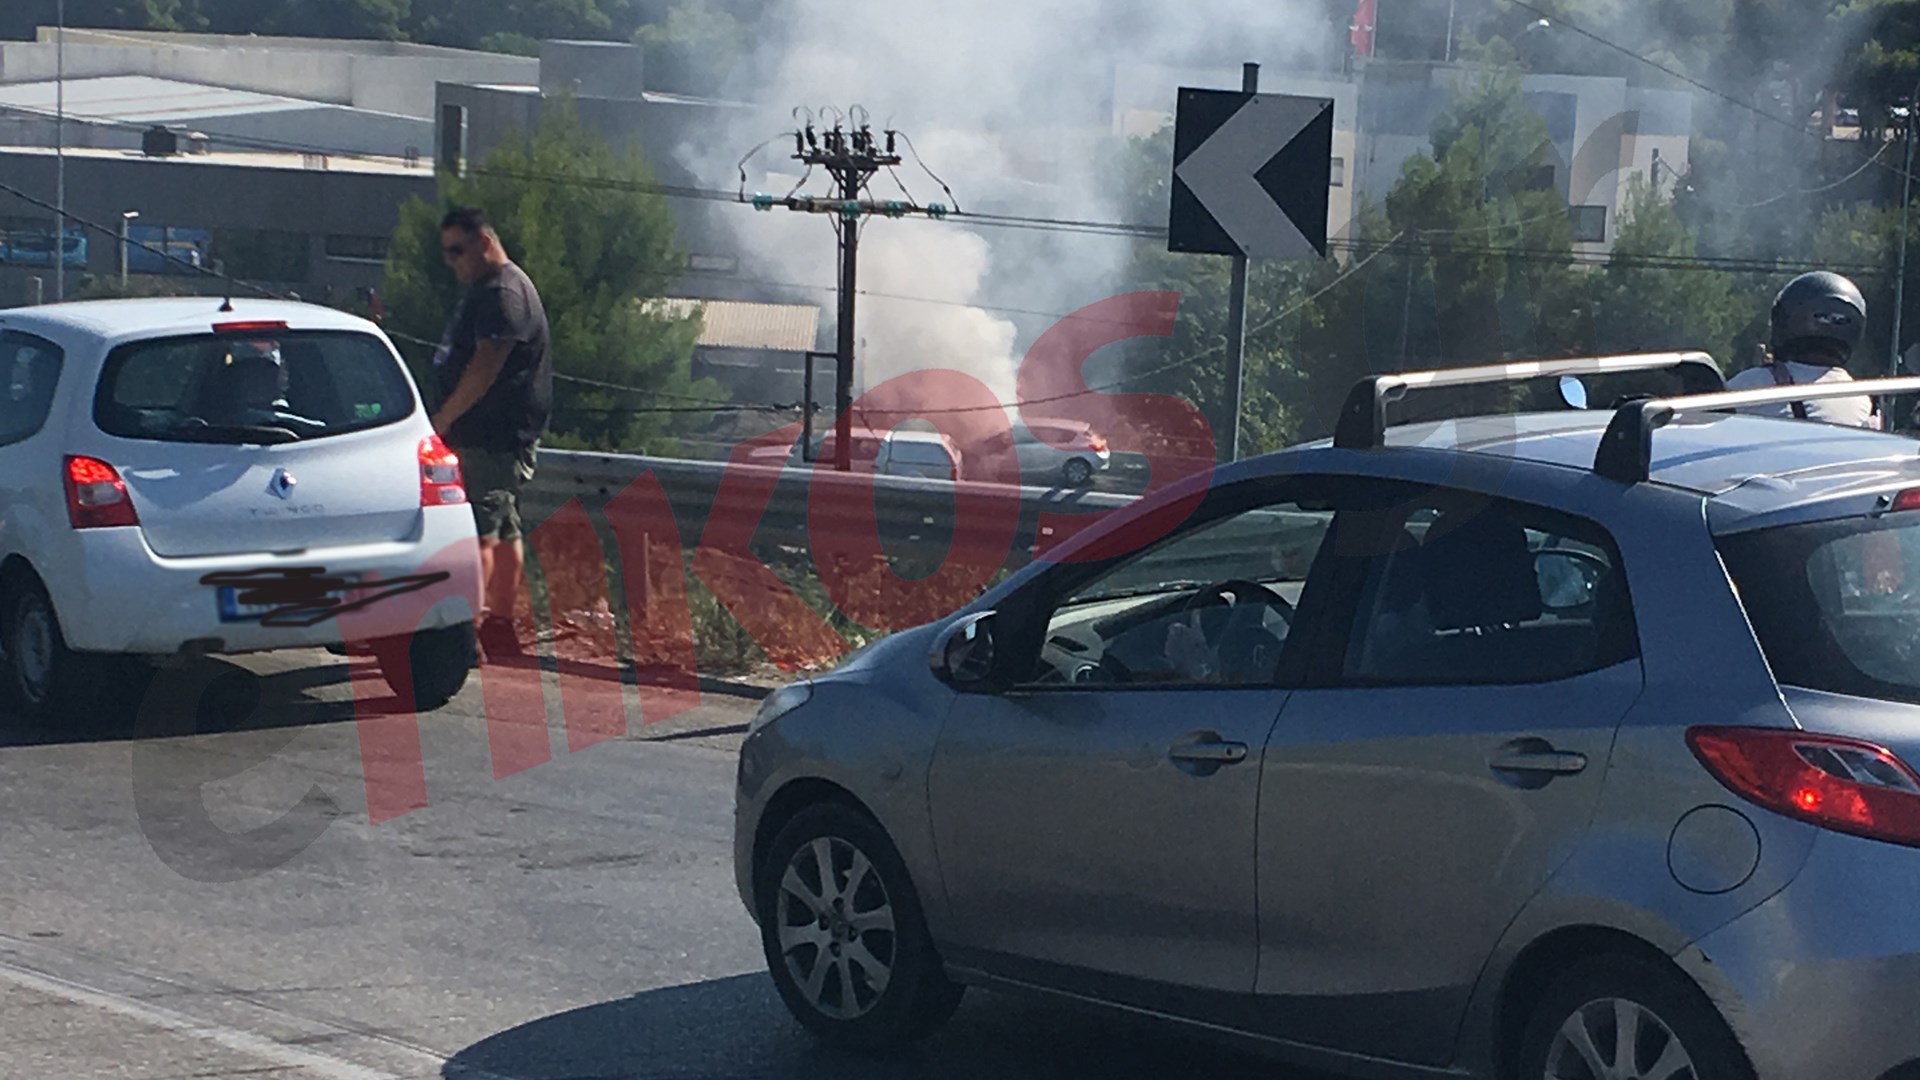 Αυτοκίνητο πήρε φωτιά στην Ε.Ο. Αθηνών – Λαμίας – ΦΩΤΟ αναγνώστη